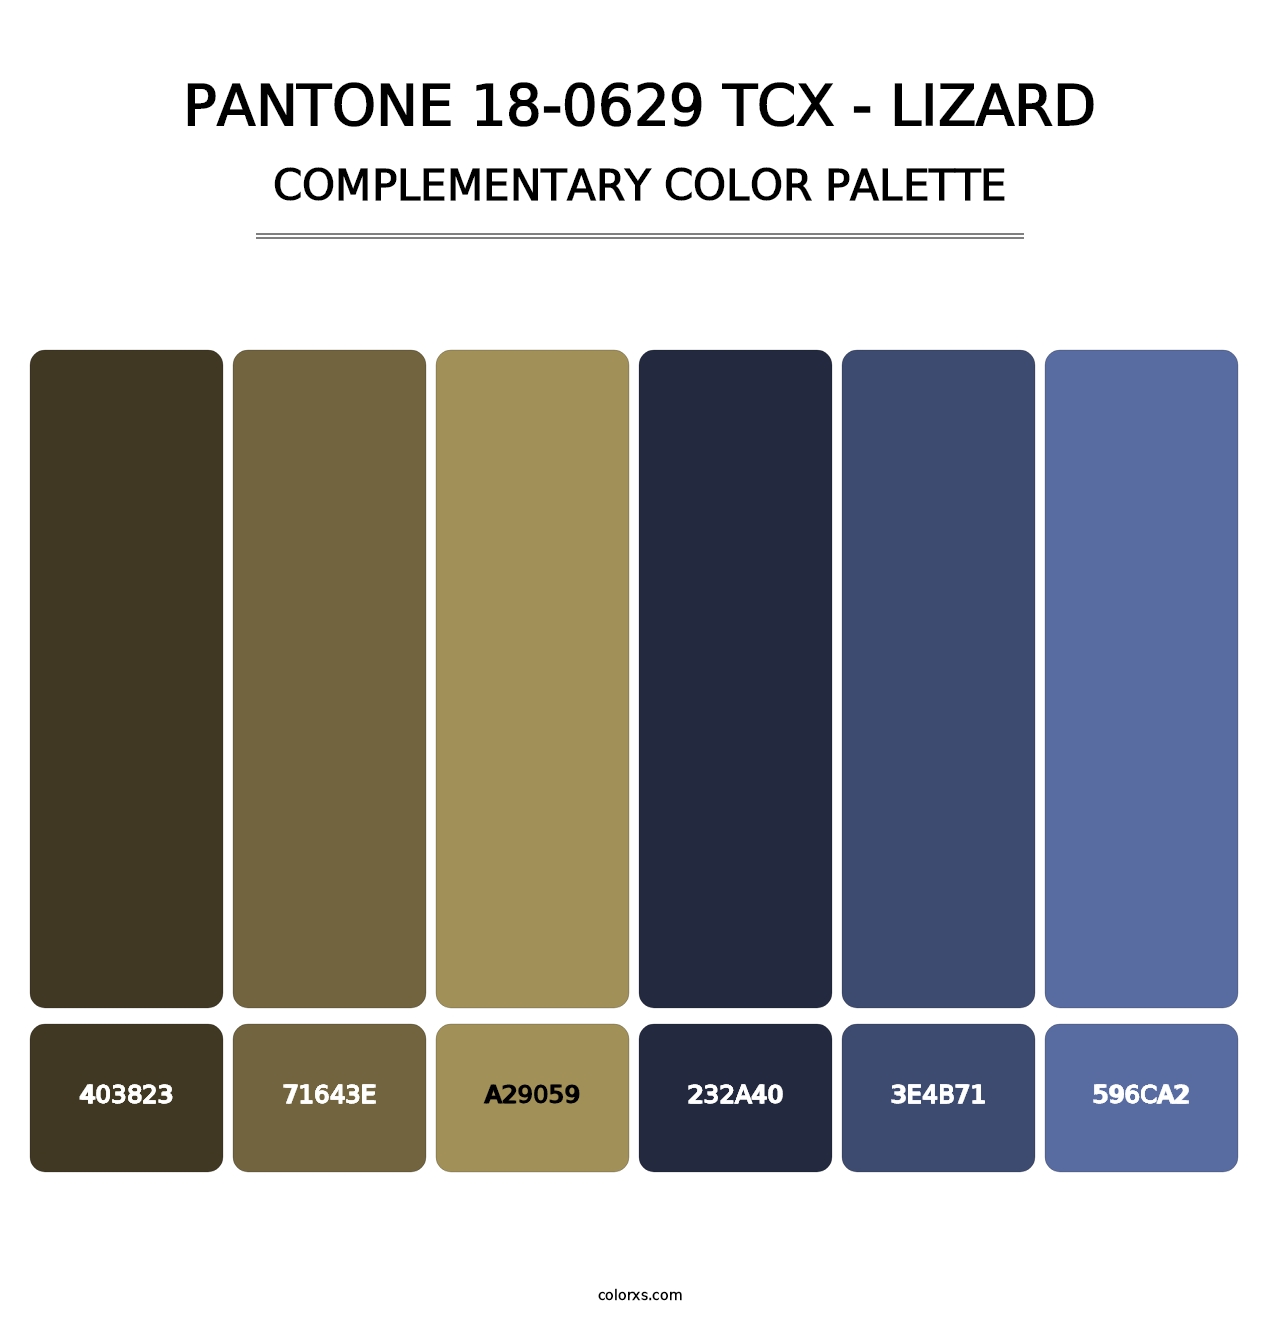 PANTONE 18-0629 TCX - Lizard - Complementary Color Palette